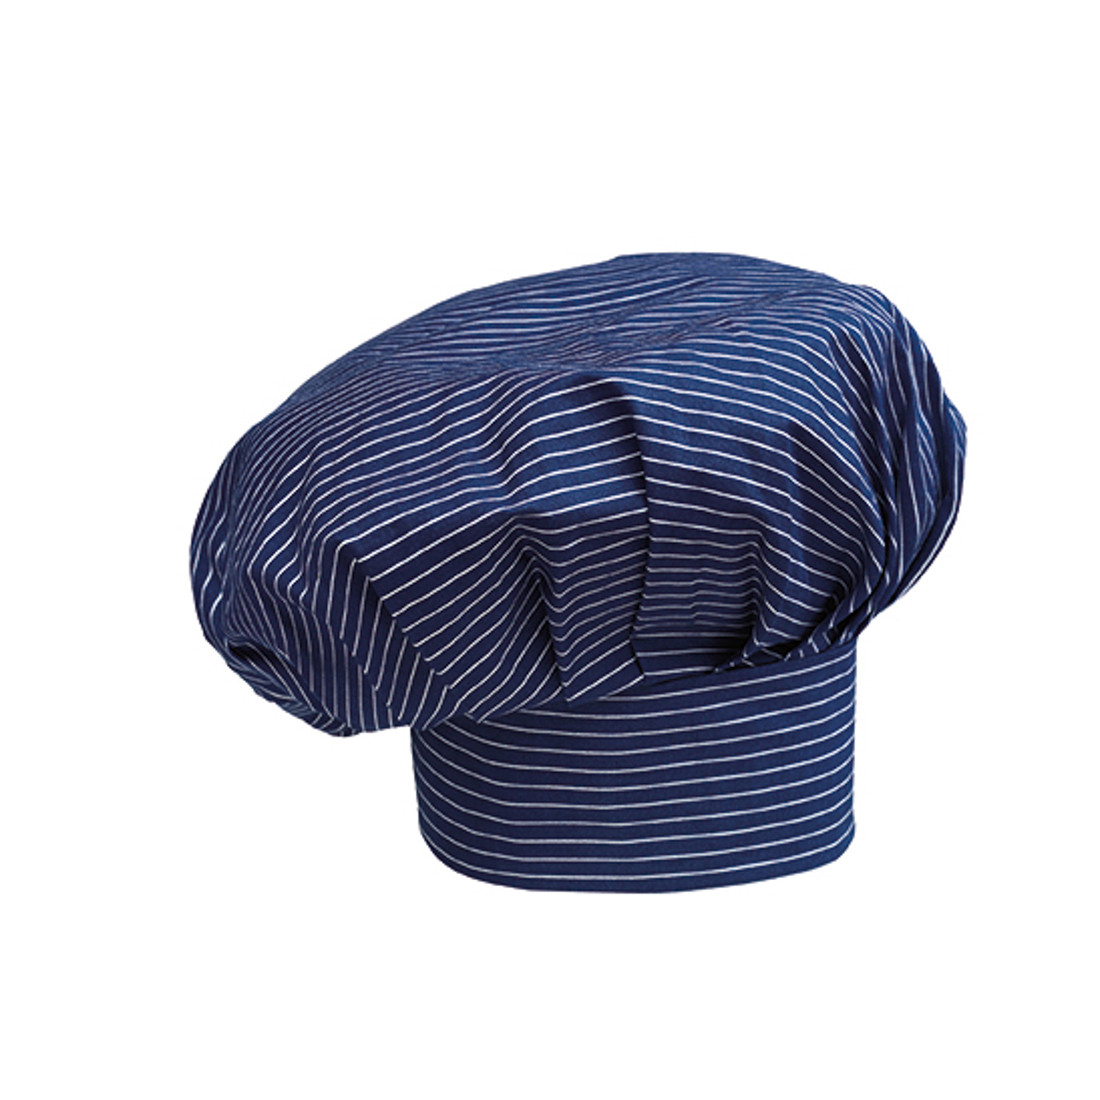 Chef's cap - Safetywear